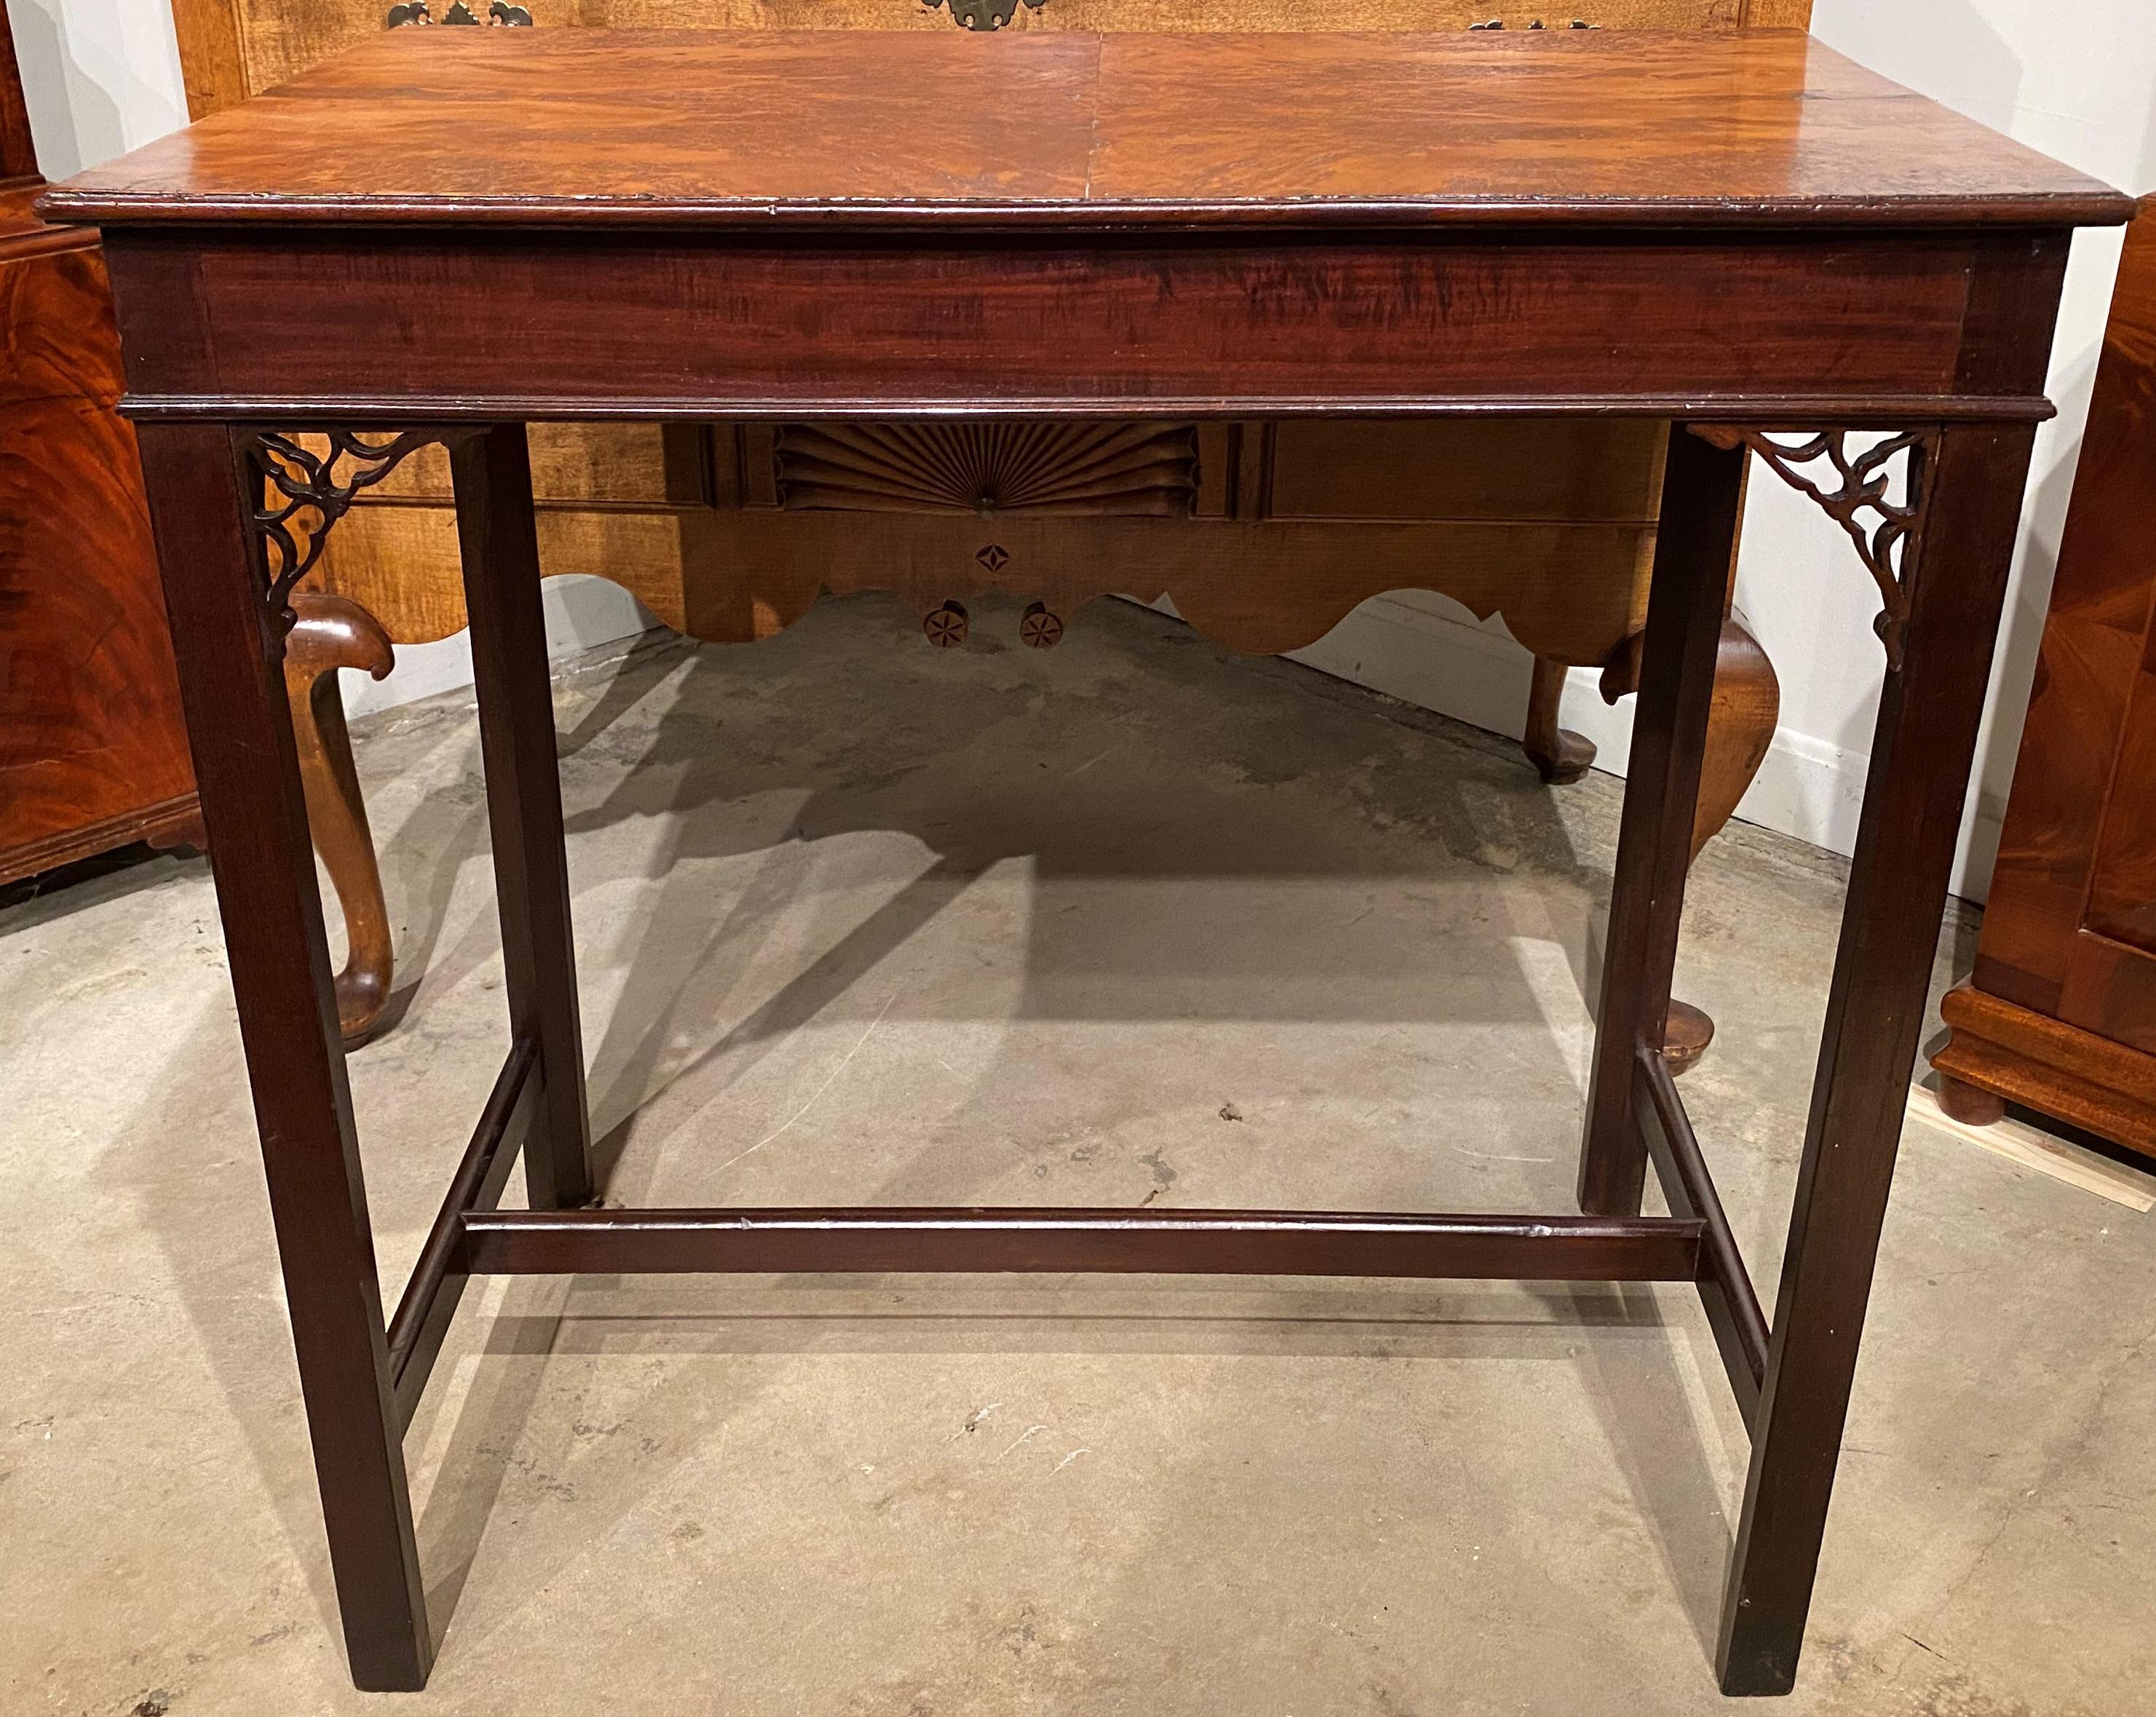 Ein schönes Beispiel für einen rechteckigen englischen Mahagoni-Tee-Tisch mit Laubsägearbeiten an den Beinen, einer Platte aus genopptem Eibenholz und einem H-förmigen Sockel, der sich ausbreitet. Der Tisch ist in sehr gutem Zustand, mit ein paar